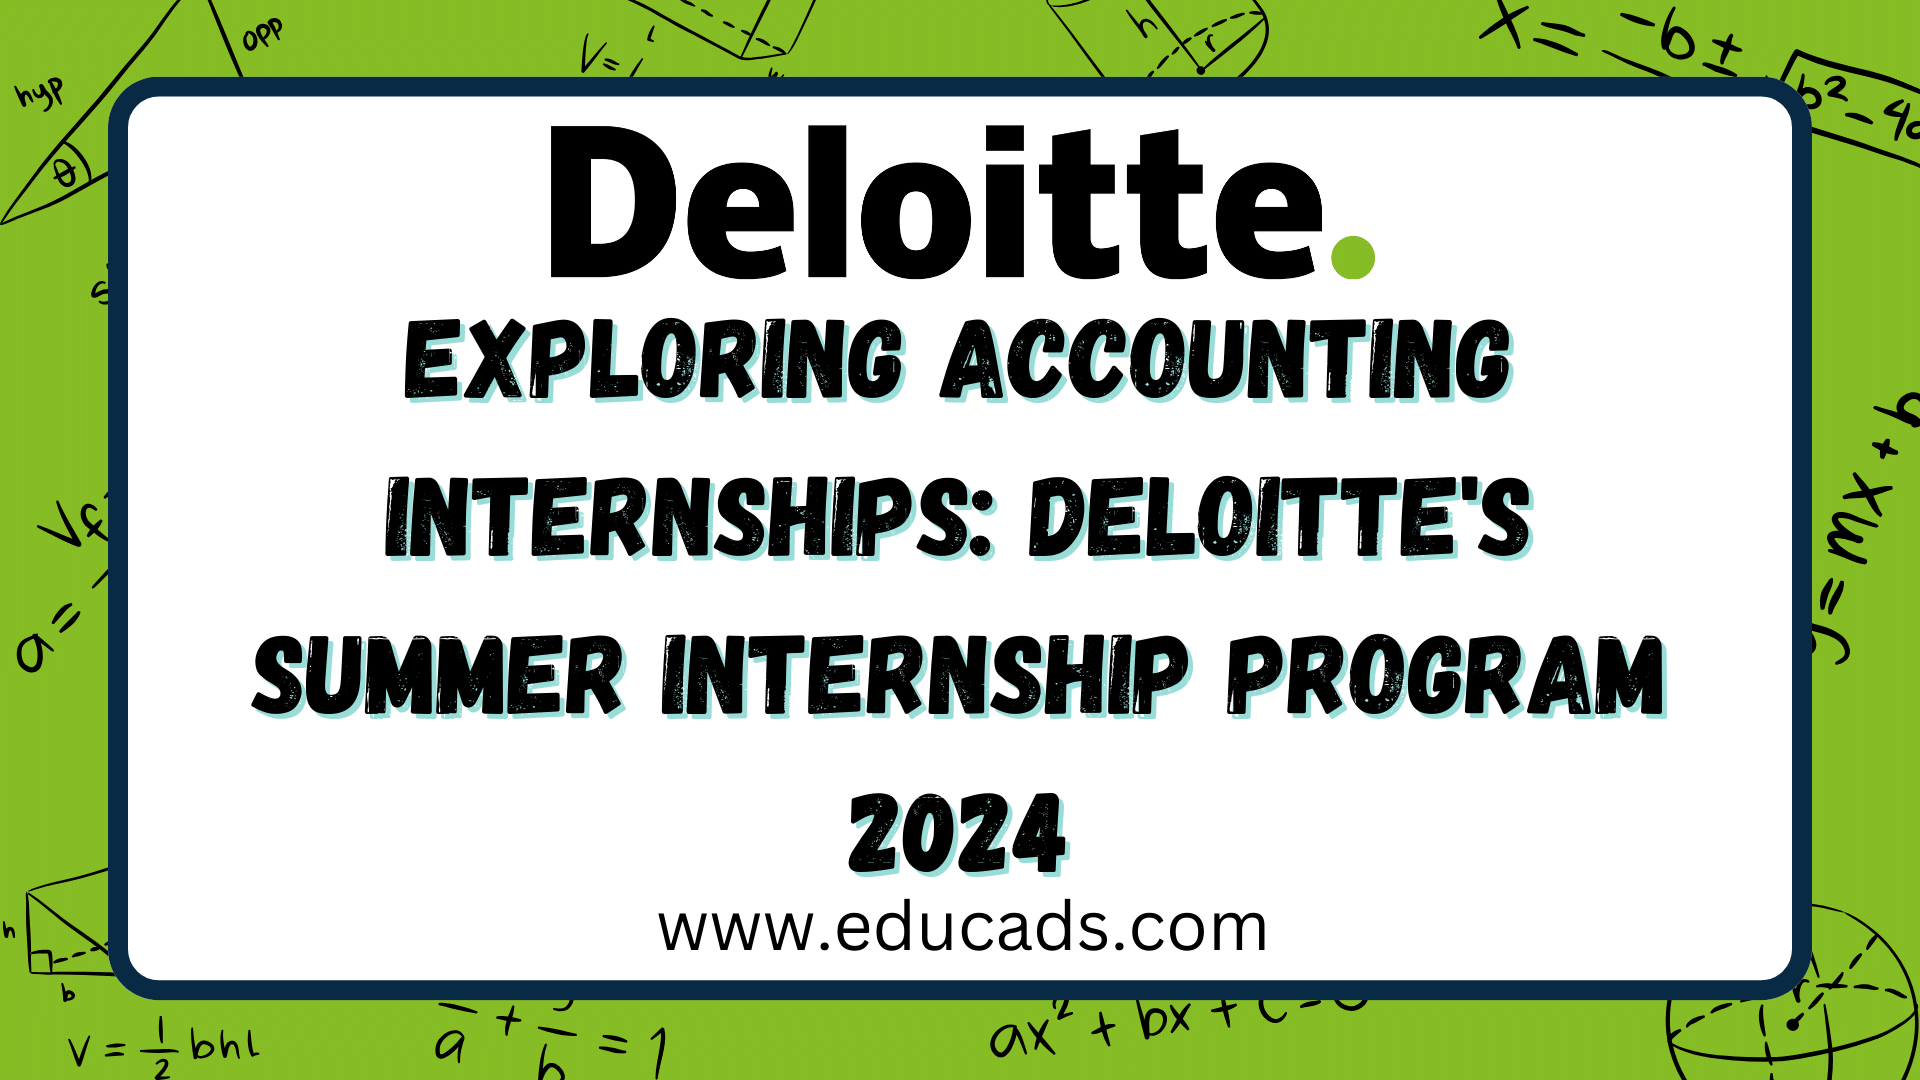 Exploring Accounting Internships Deloitte's Summer Internship Program 2024